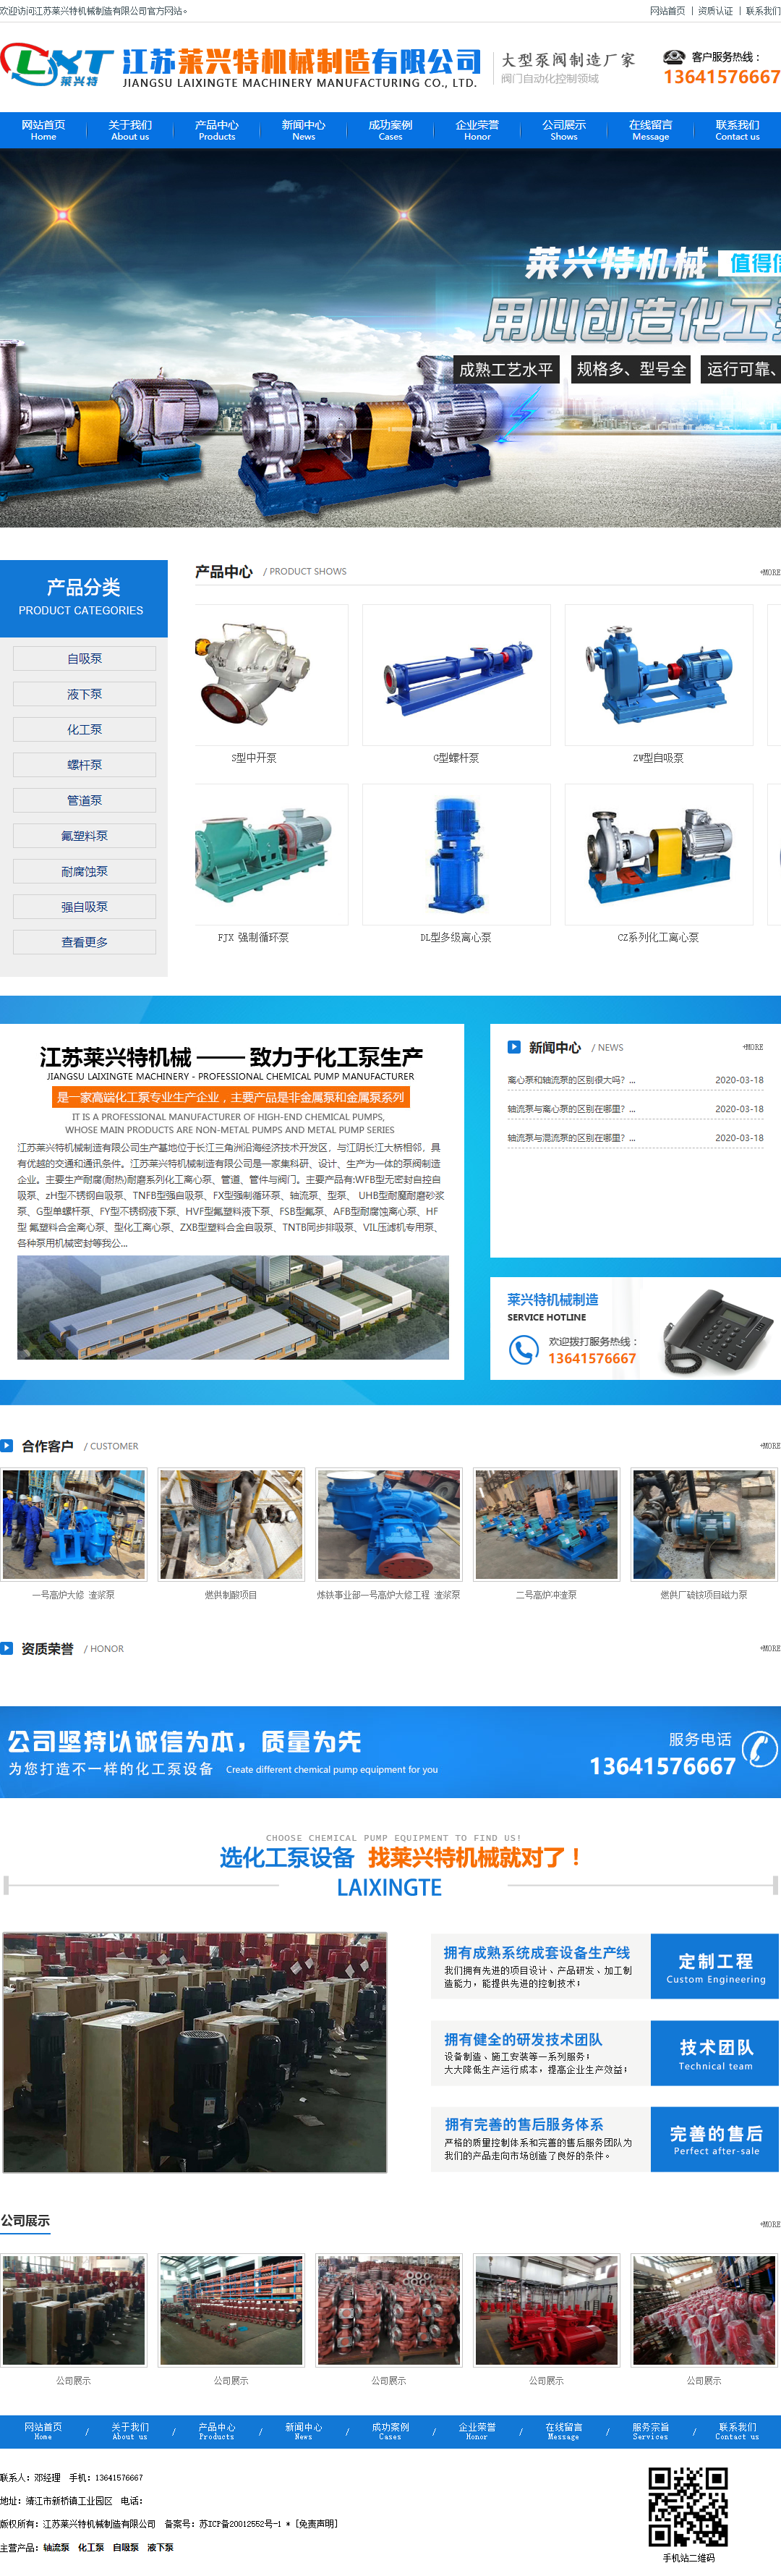 江苏莱兴特机械制造有限公司网站案例